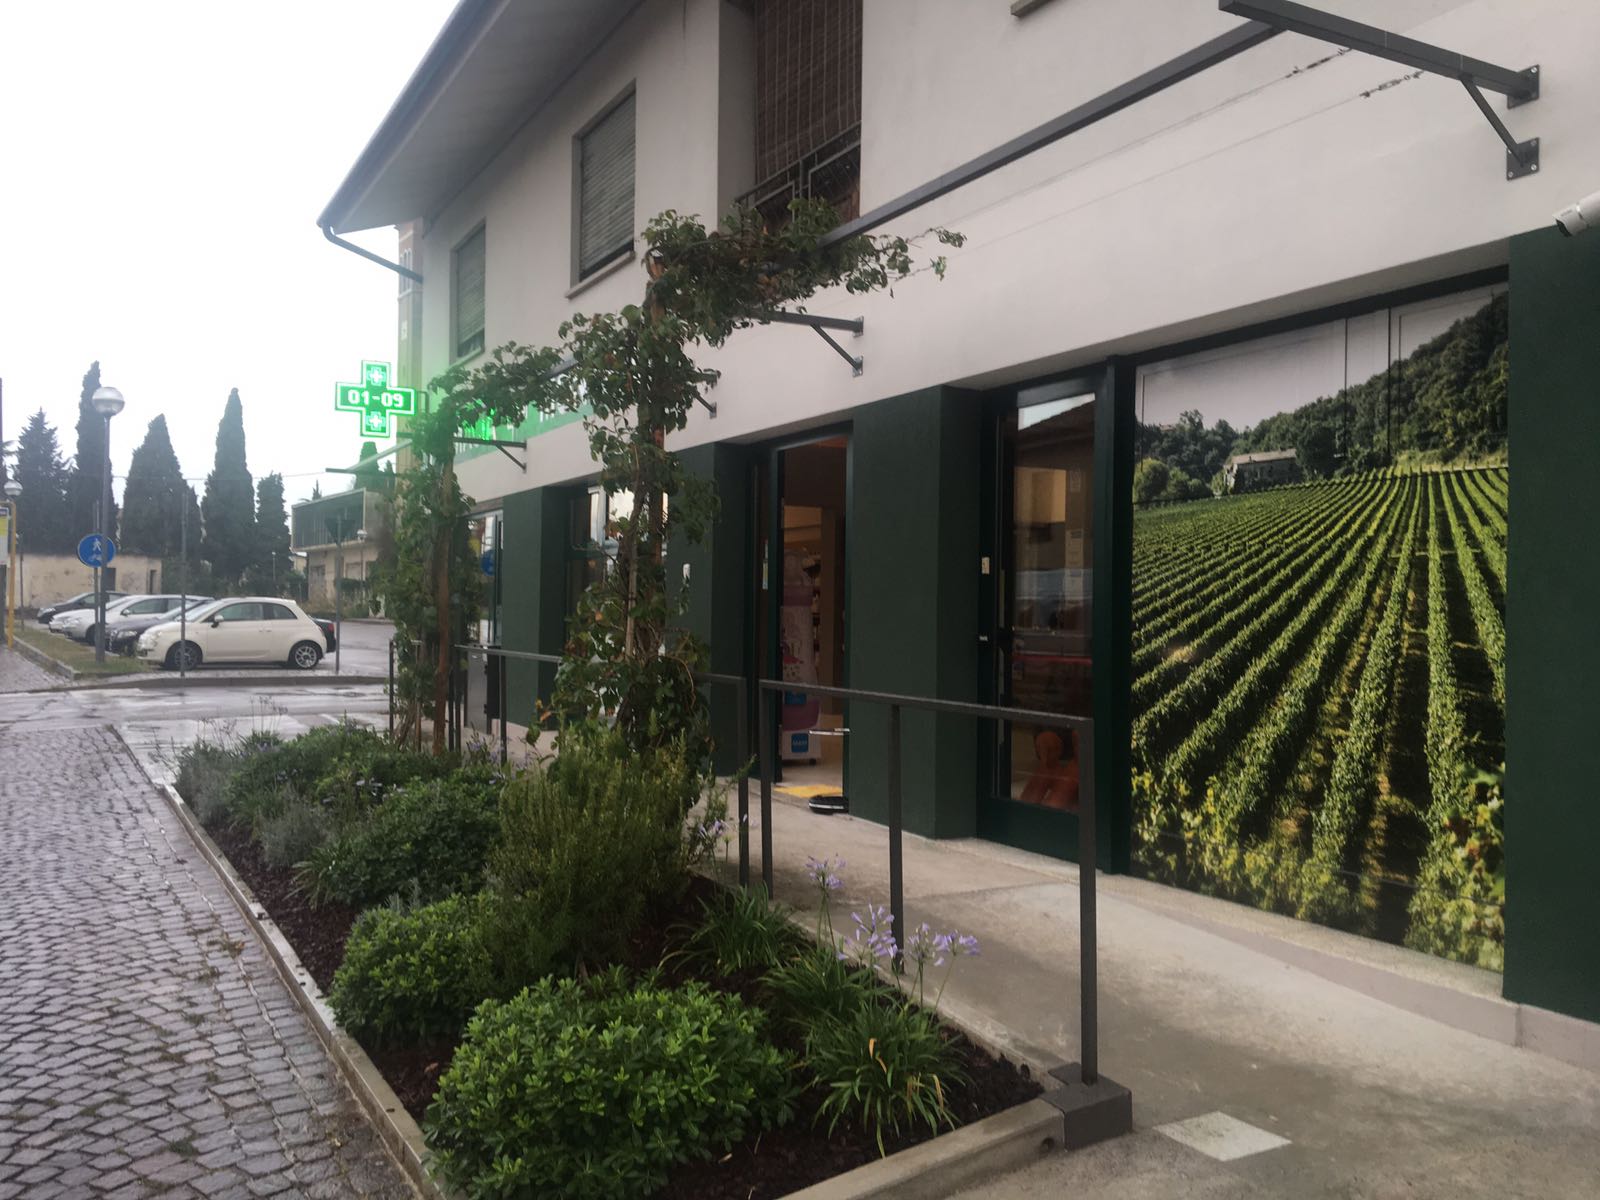 Ristrutturazione farmacia, Treviso.